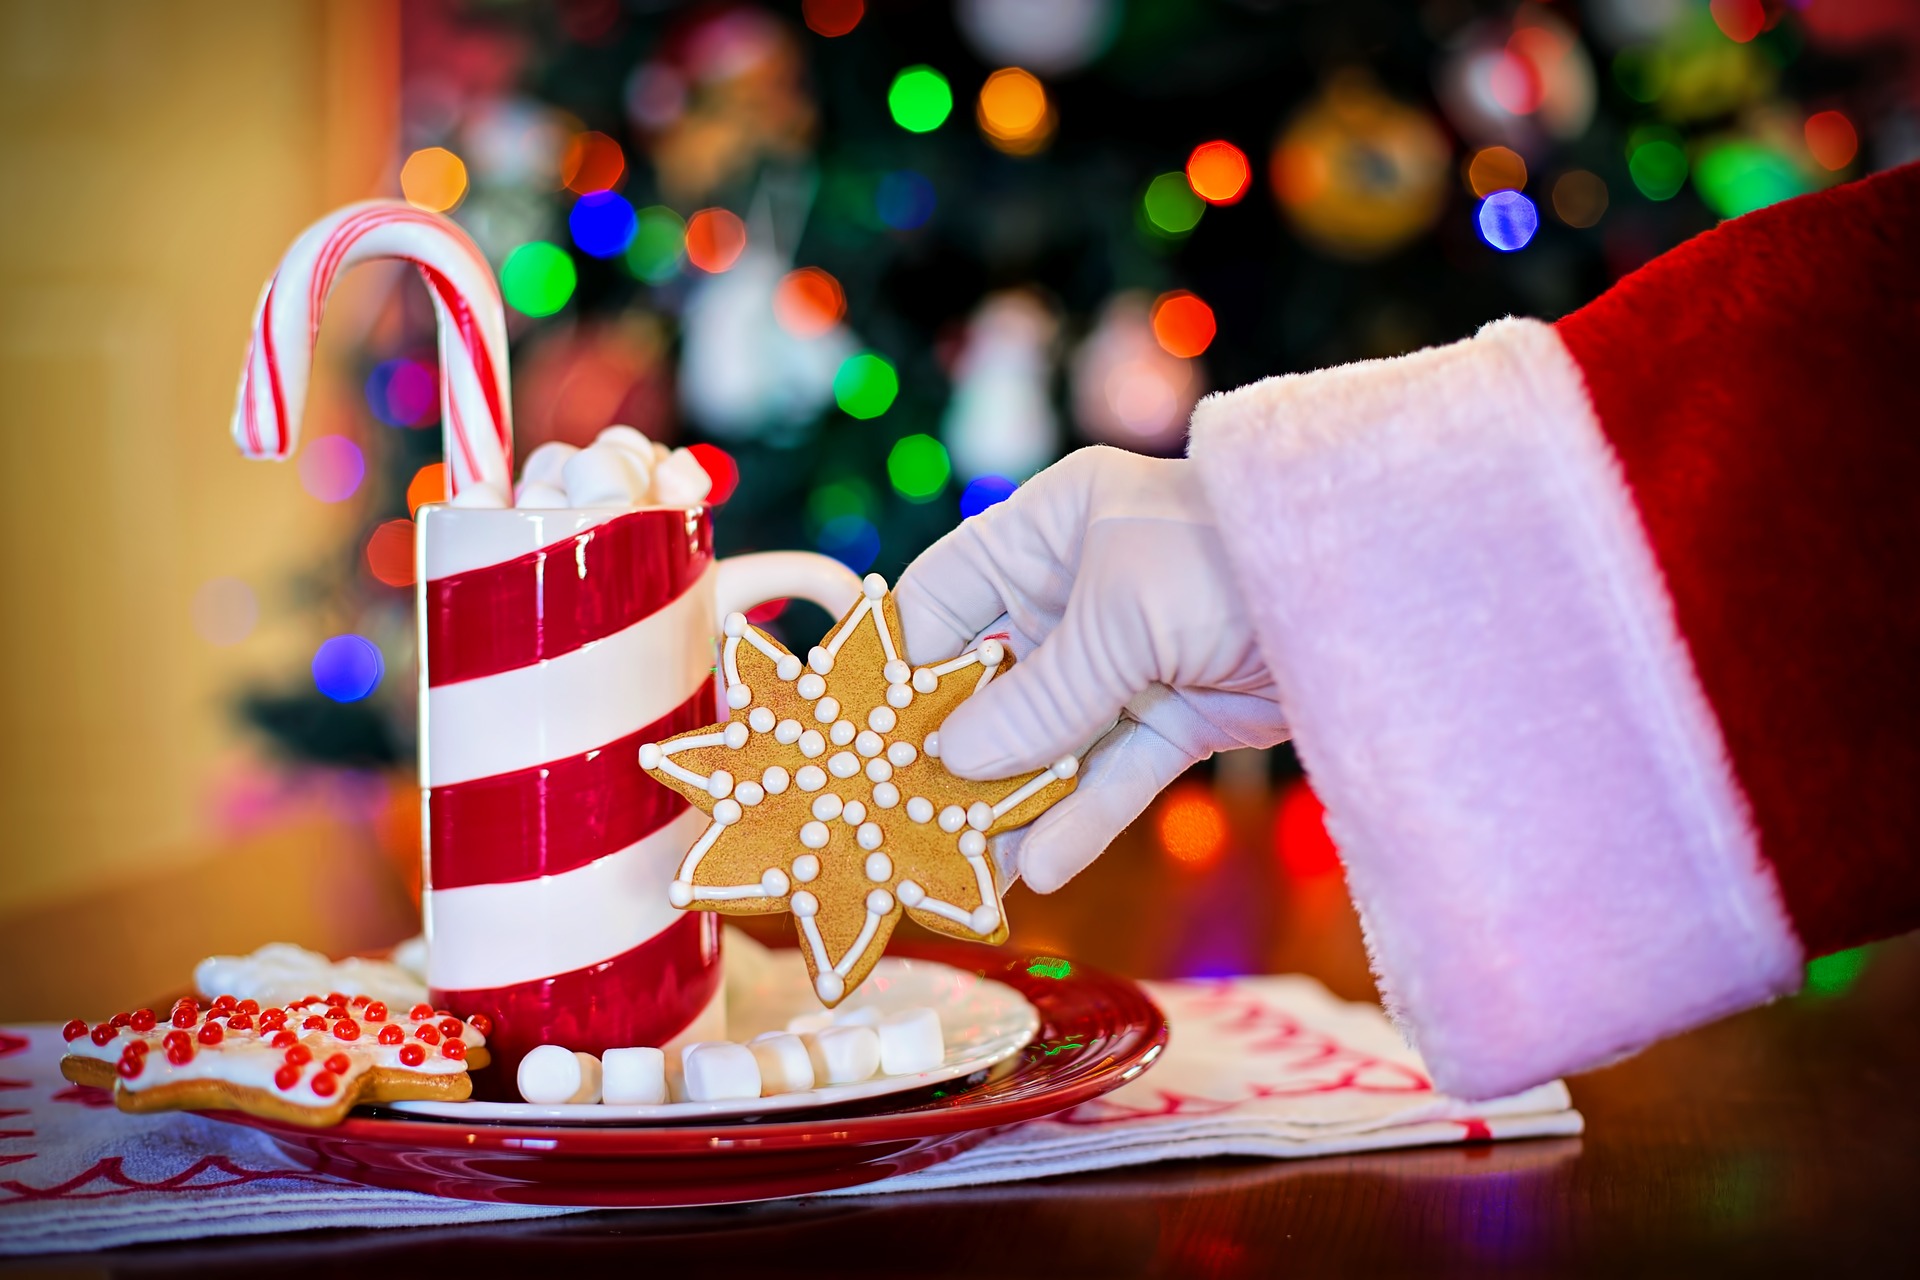 Santa with milk and cookies, Brunch with Santa at Casa Larga Vineyards